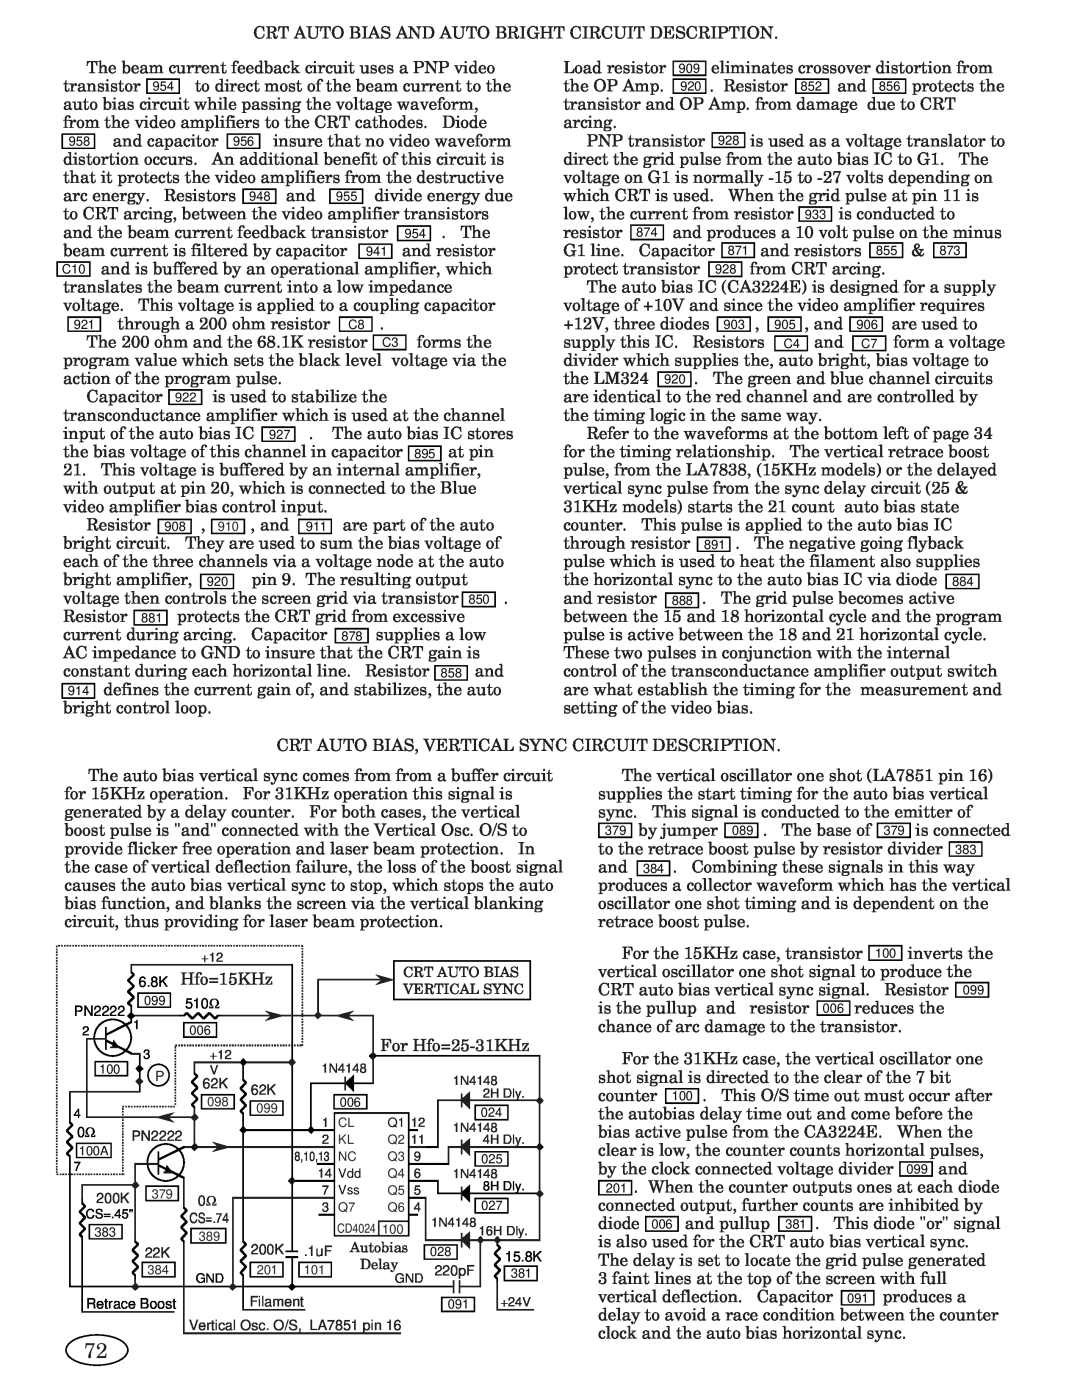 Genius ISO XFR-75W, 2093, 1493, 2793, 3693, 1793, 1993 manual voltage via the, Crt Auto Bias, Vertical Sync, Autobias, Delay 